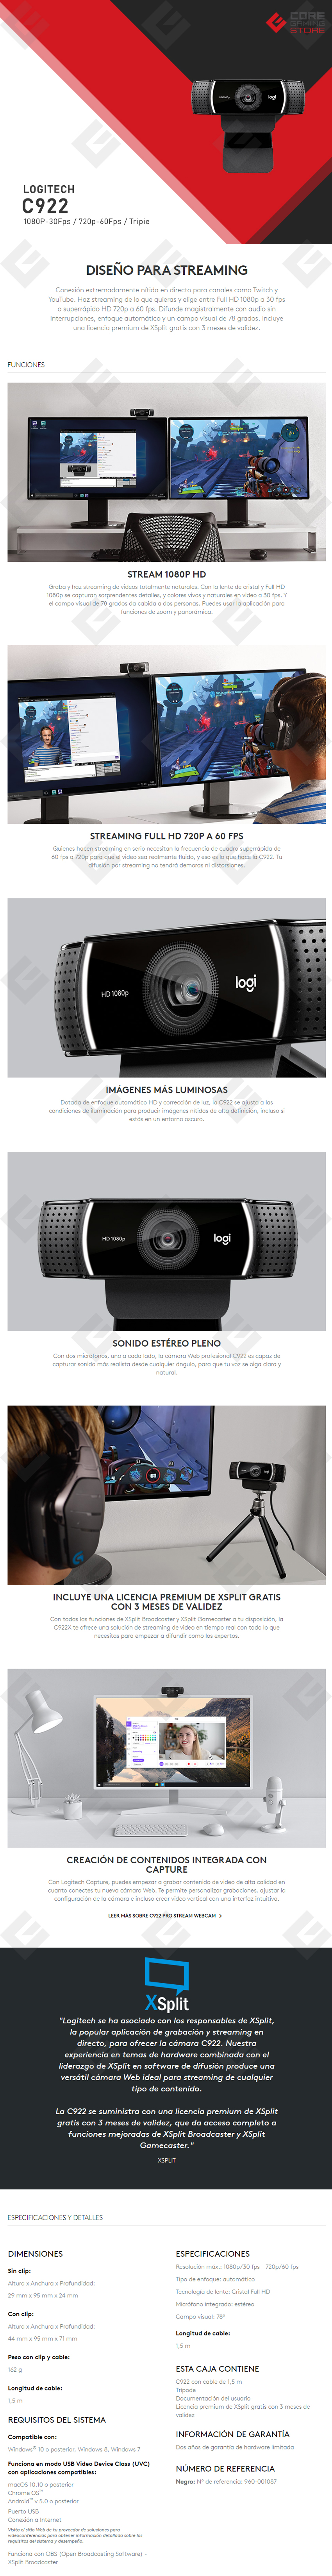 Webcam Logitech C922 Pro Stream, Full HD 1080p USB, streaming alta calidad  Twitch y